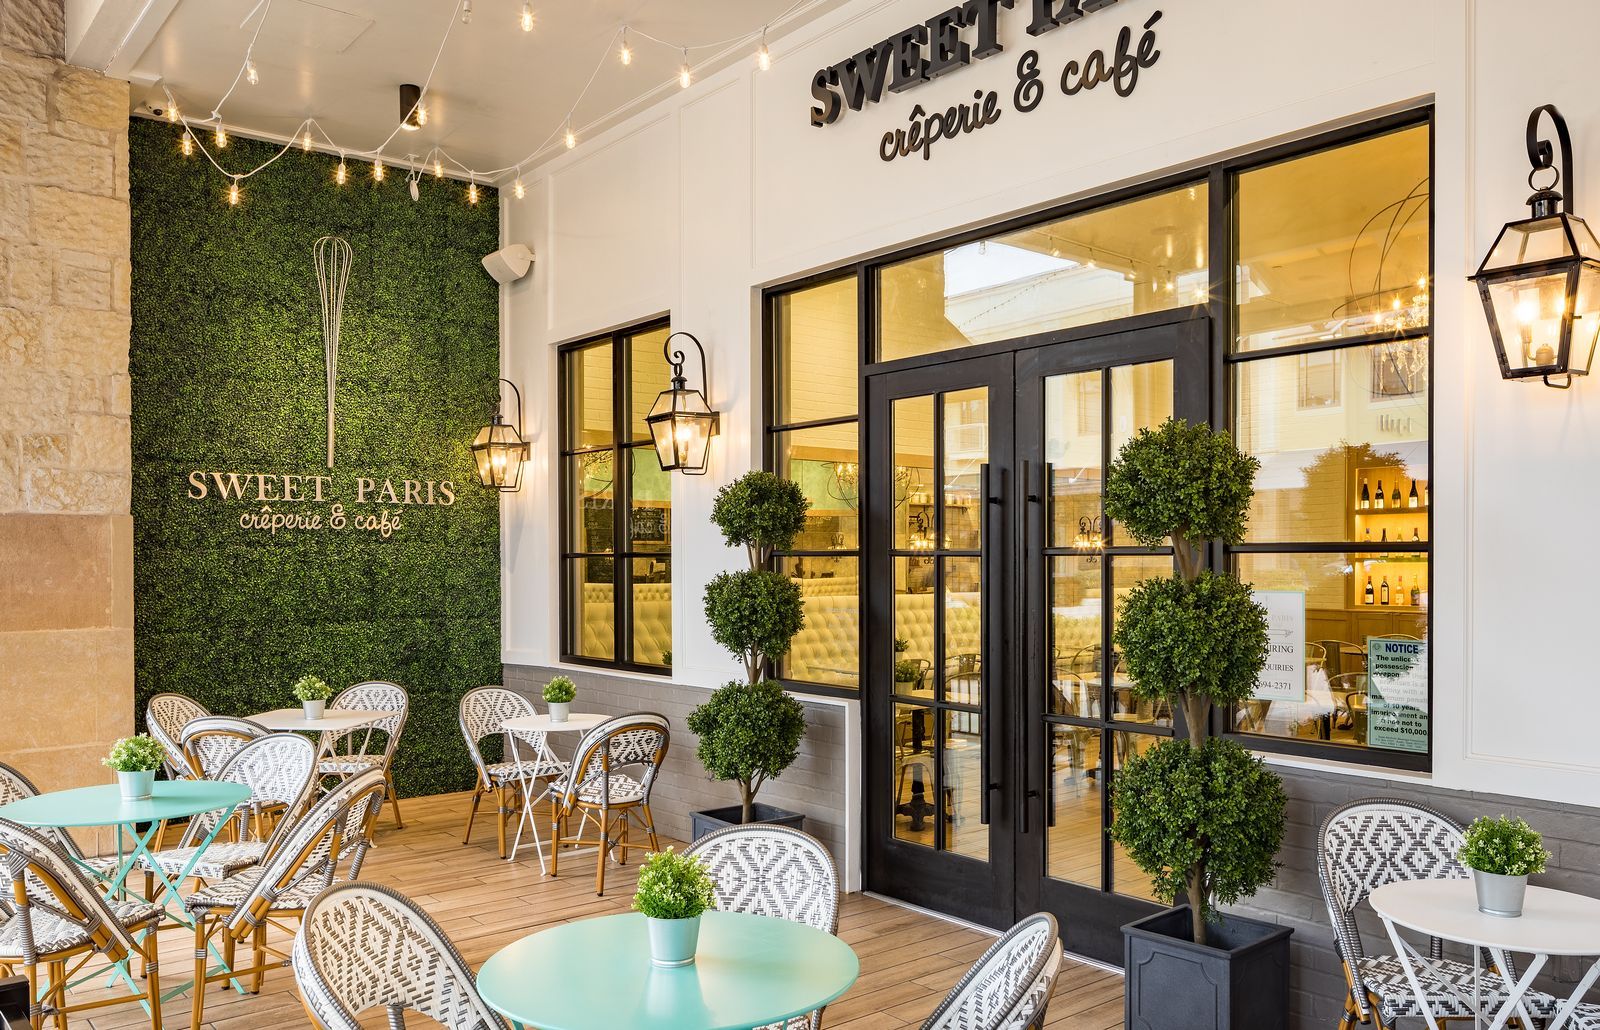 Sweet Paris, la célèbre crêperie & café texan, va ouvrir plusieurs adresses à Miami